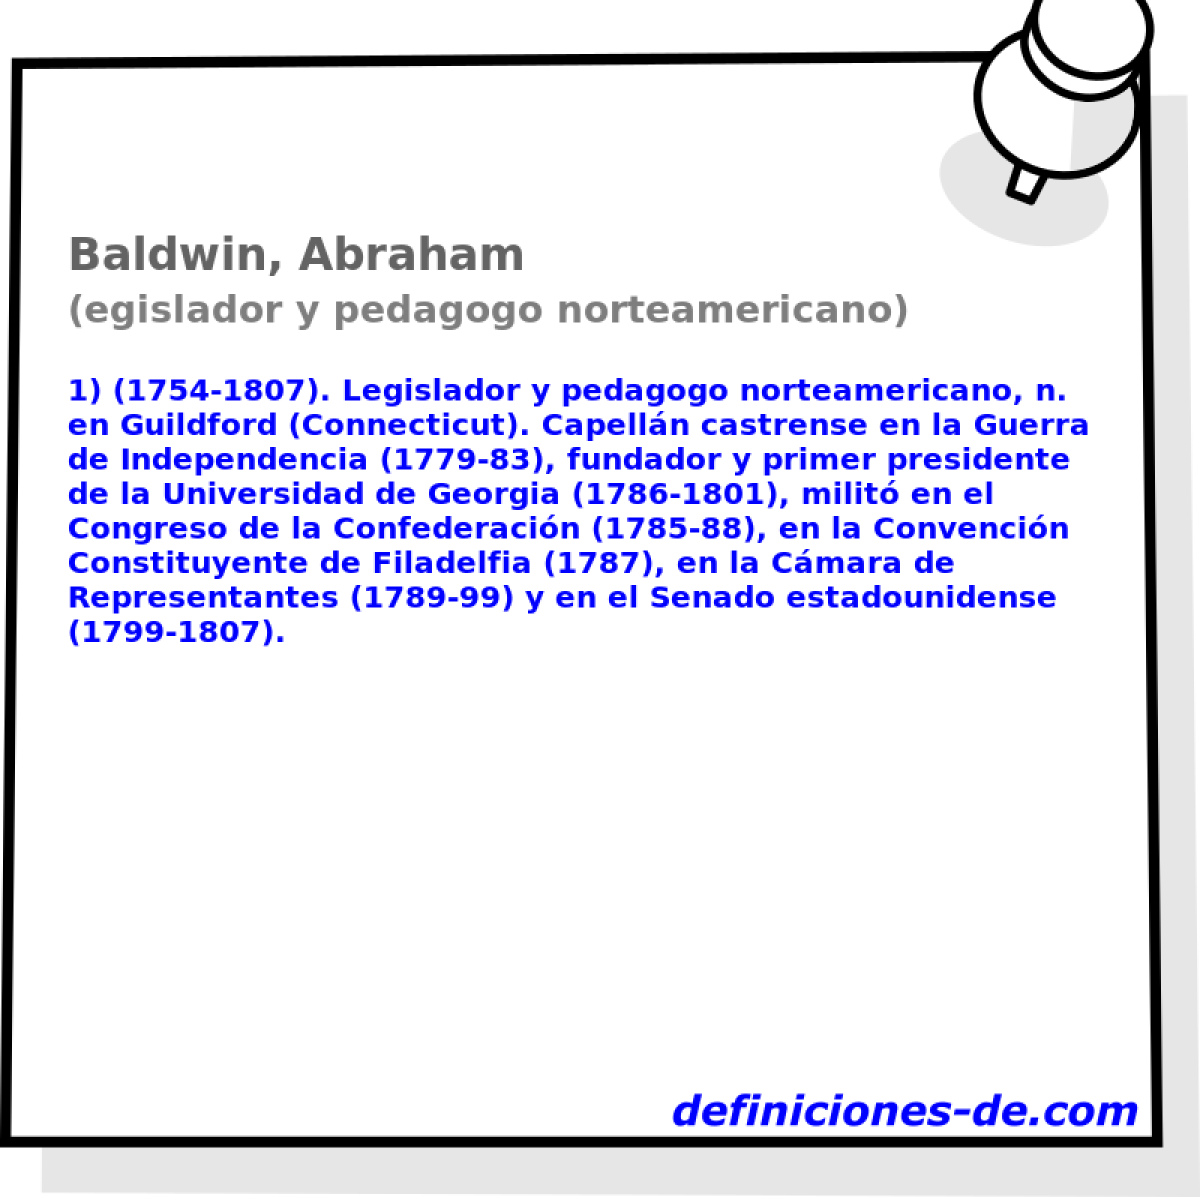 Baldwin, Abraham (egislador y pedagogo norteamericano)